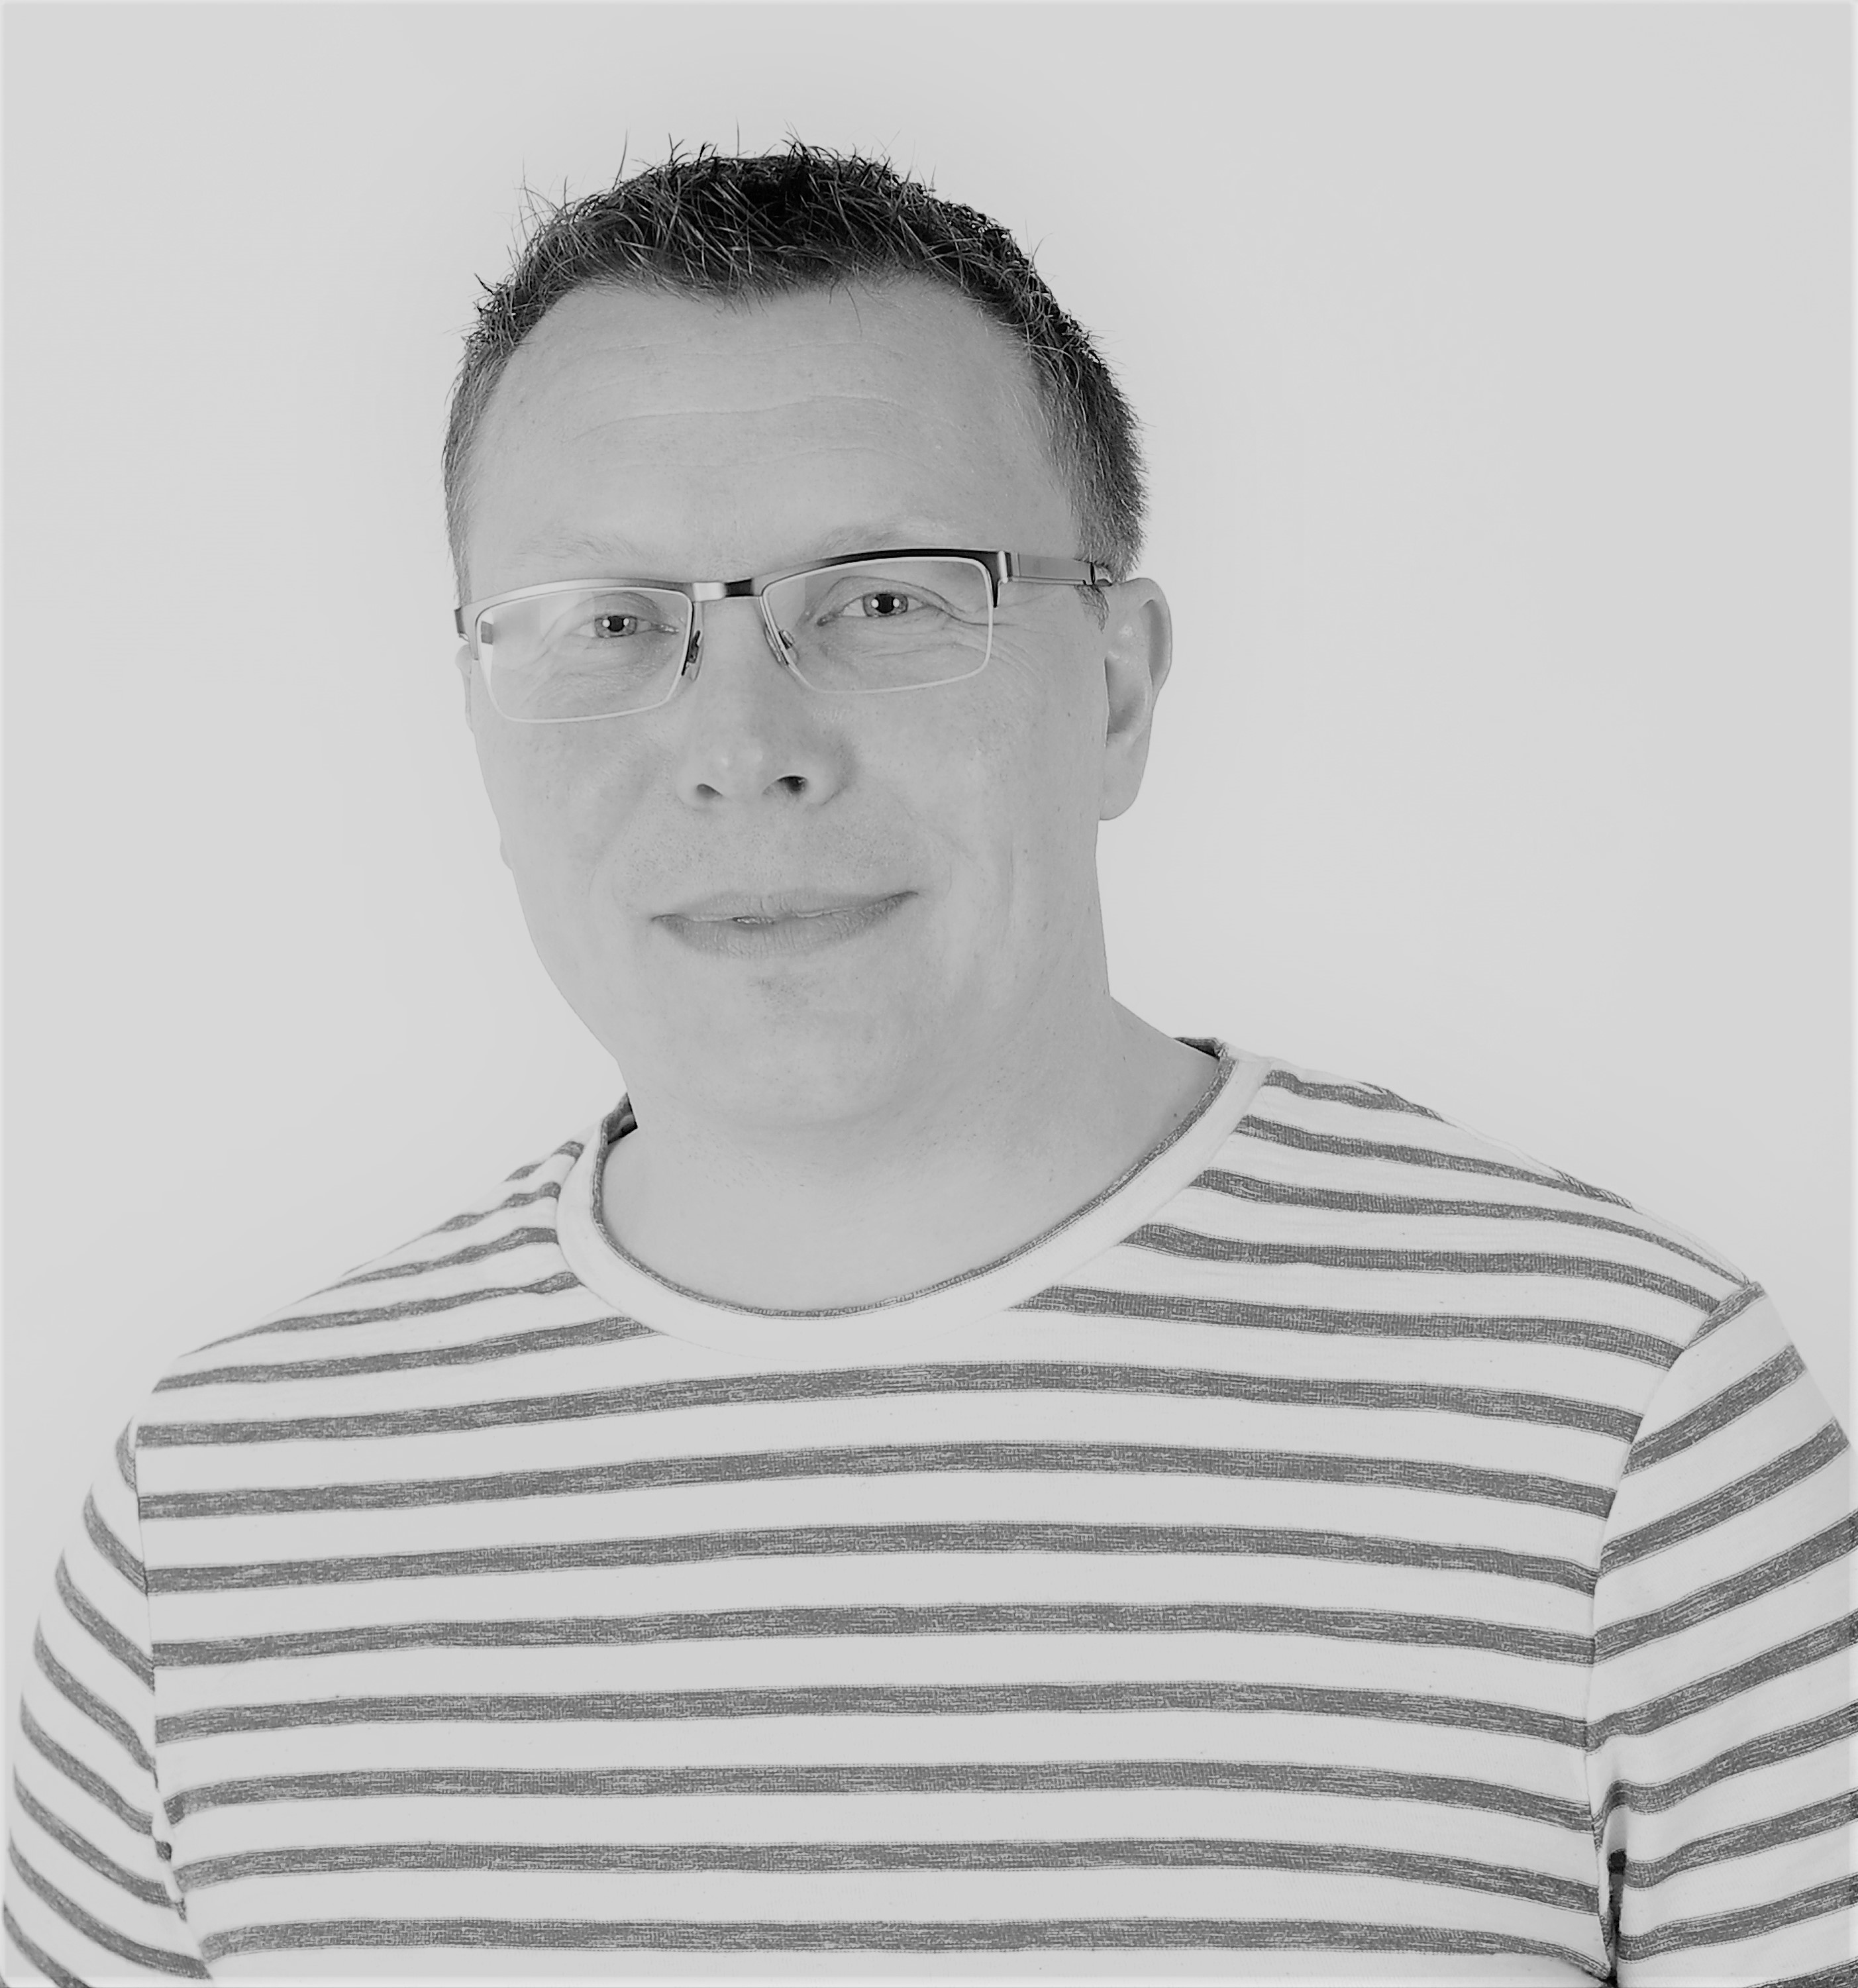 Erik van der Sloot Freelance ICT professional